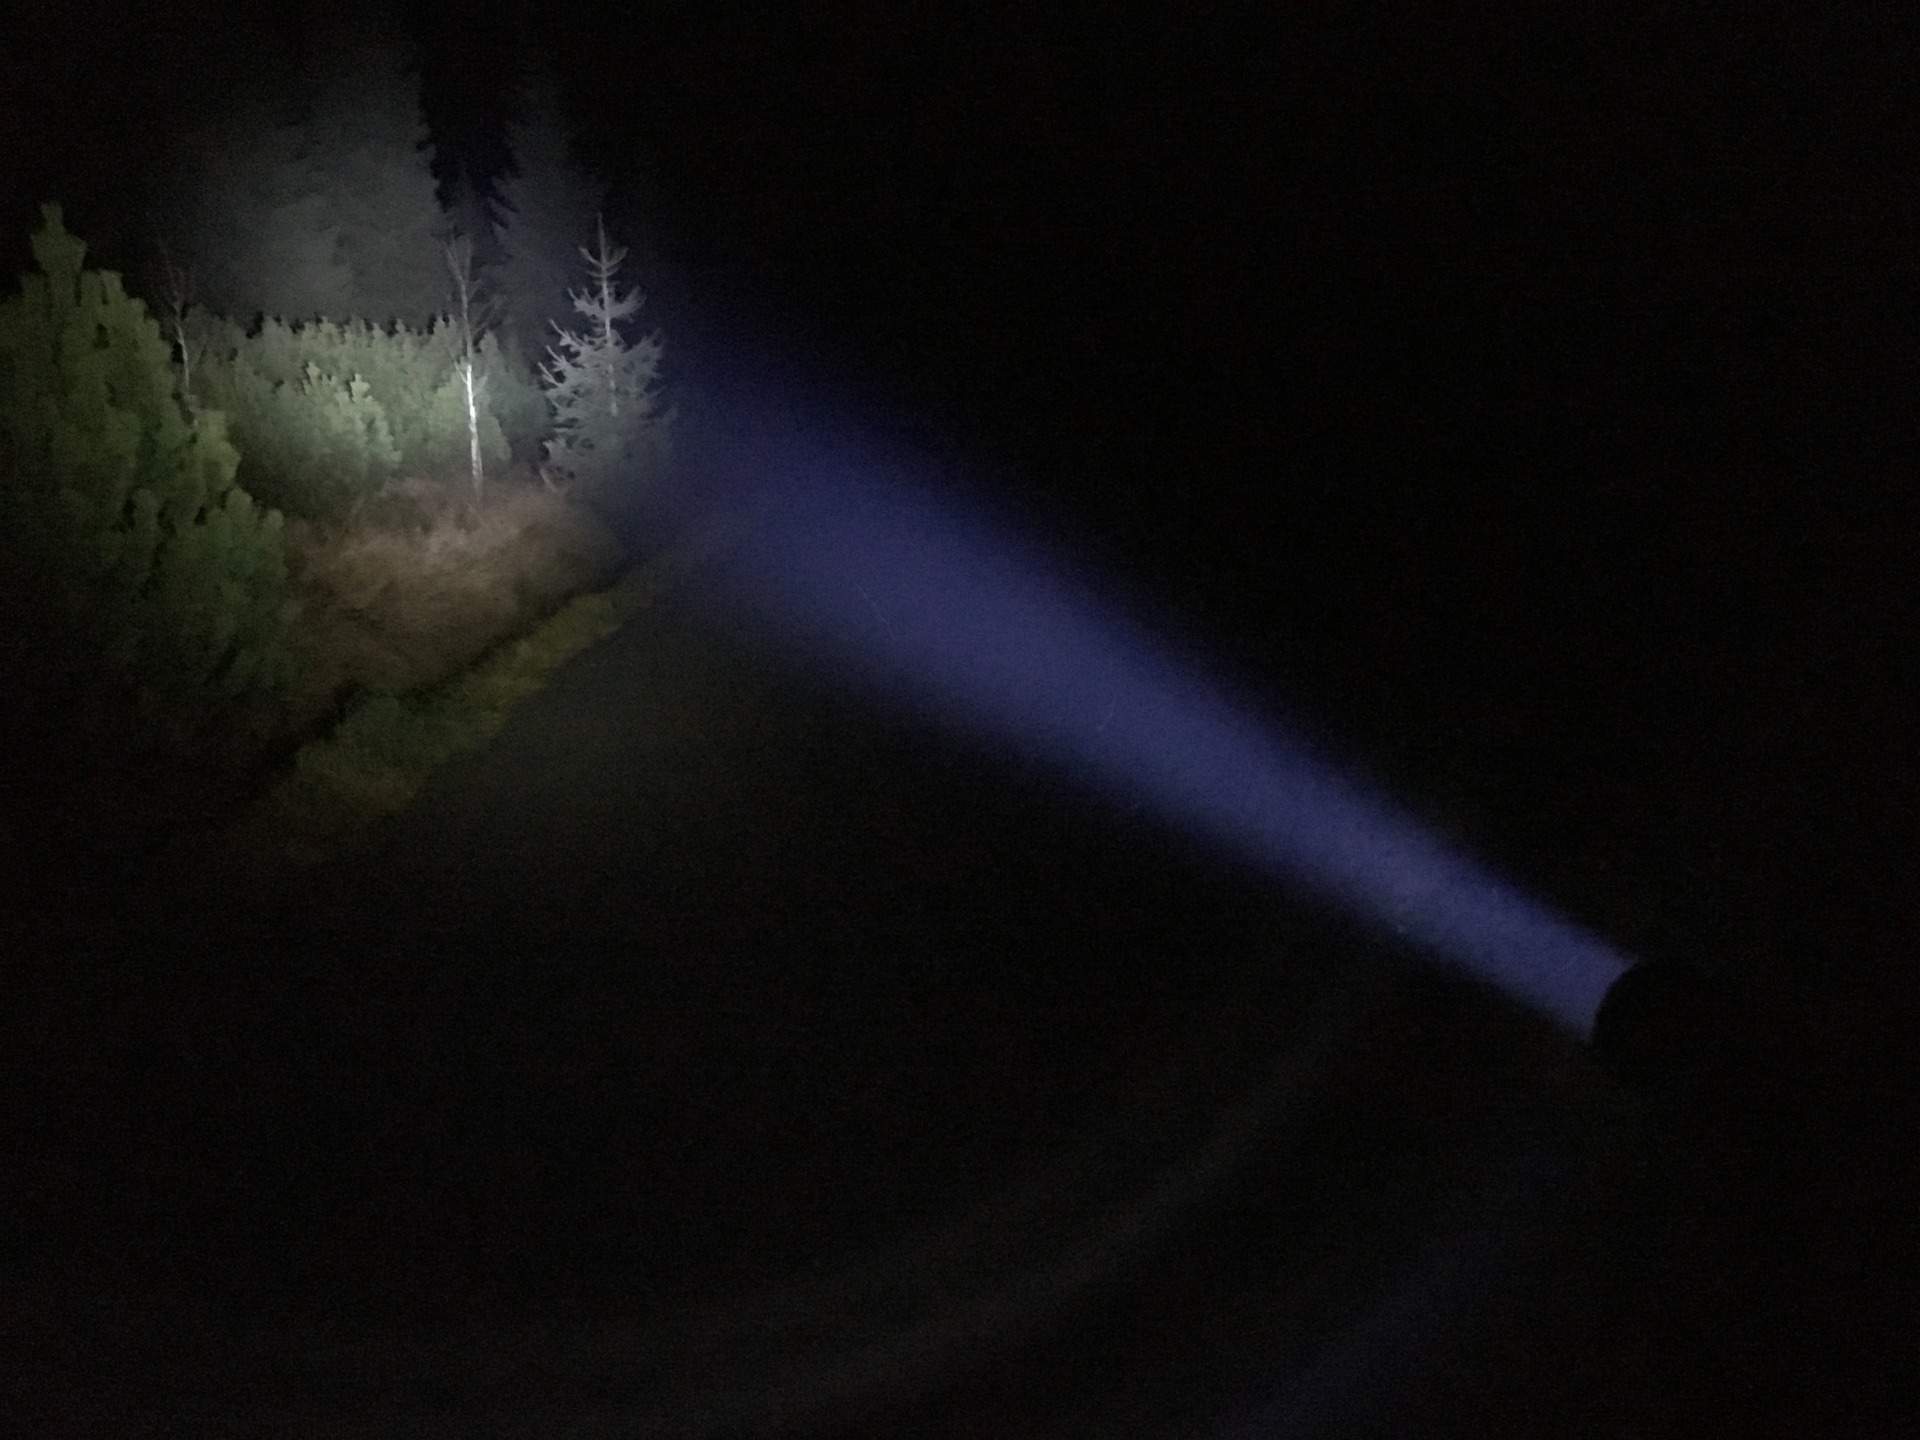 Zaostřené světlo svítilny Ledlenser P7R do lesa.